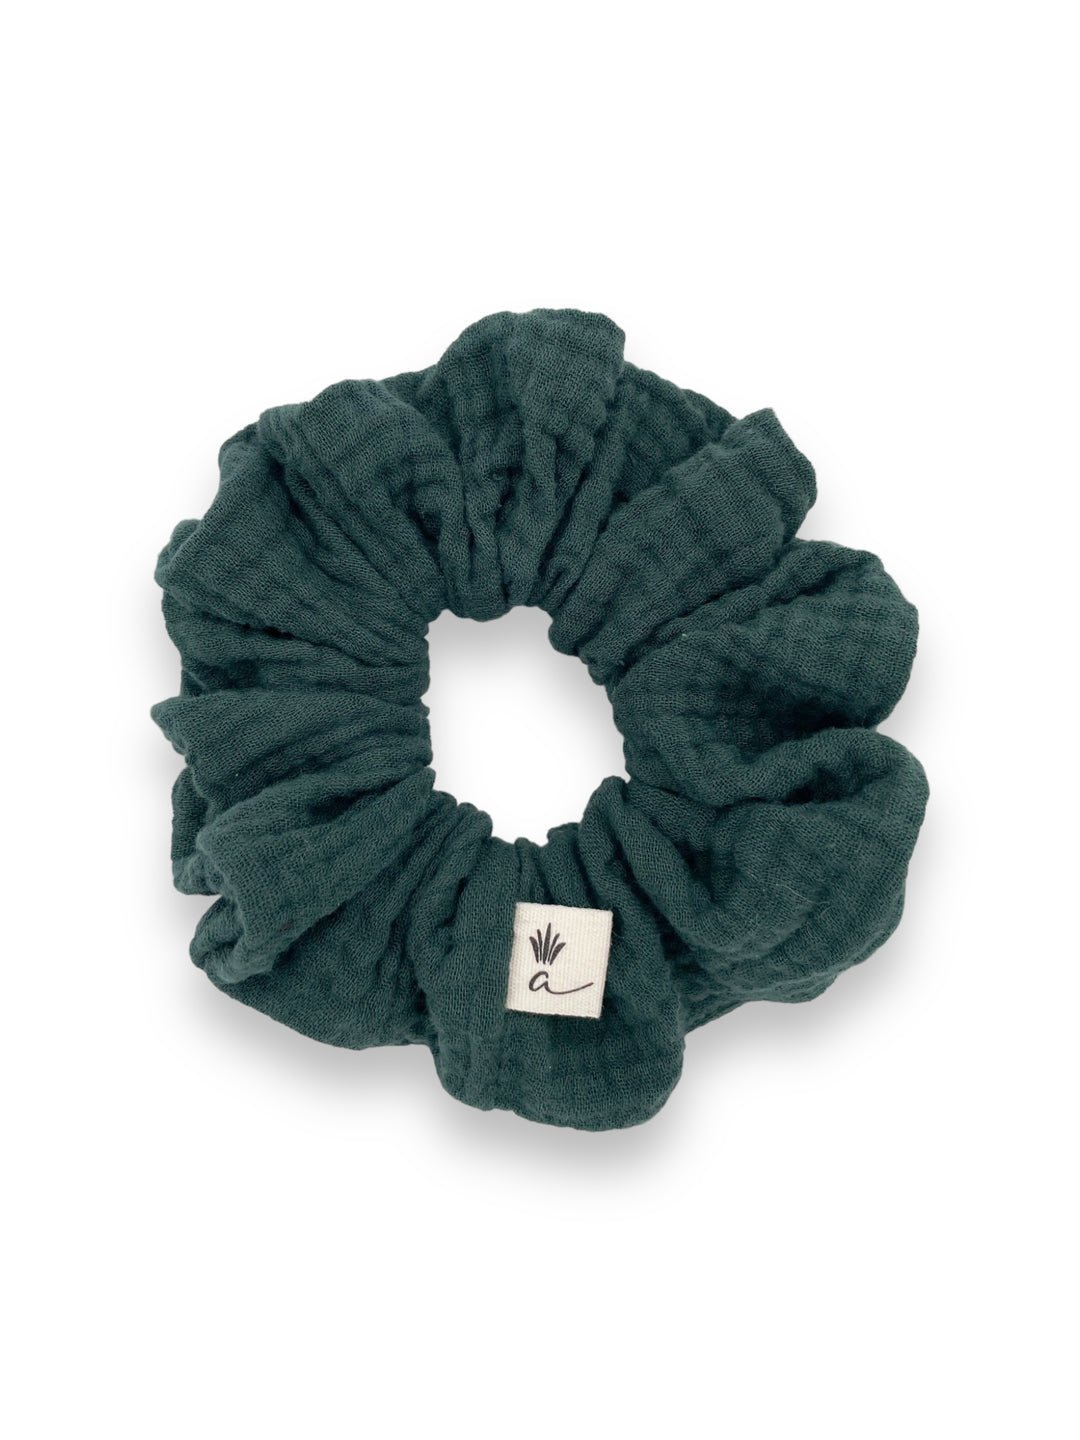 Muslin scrunchies - Evergreen